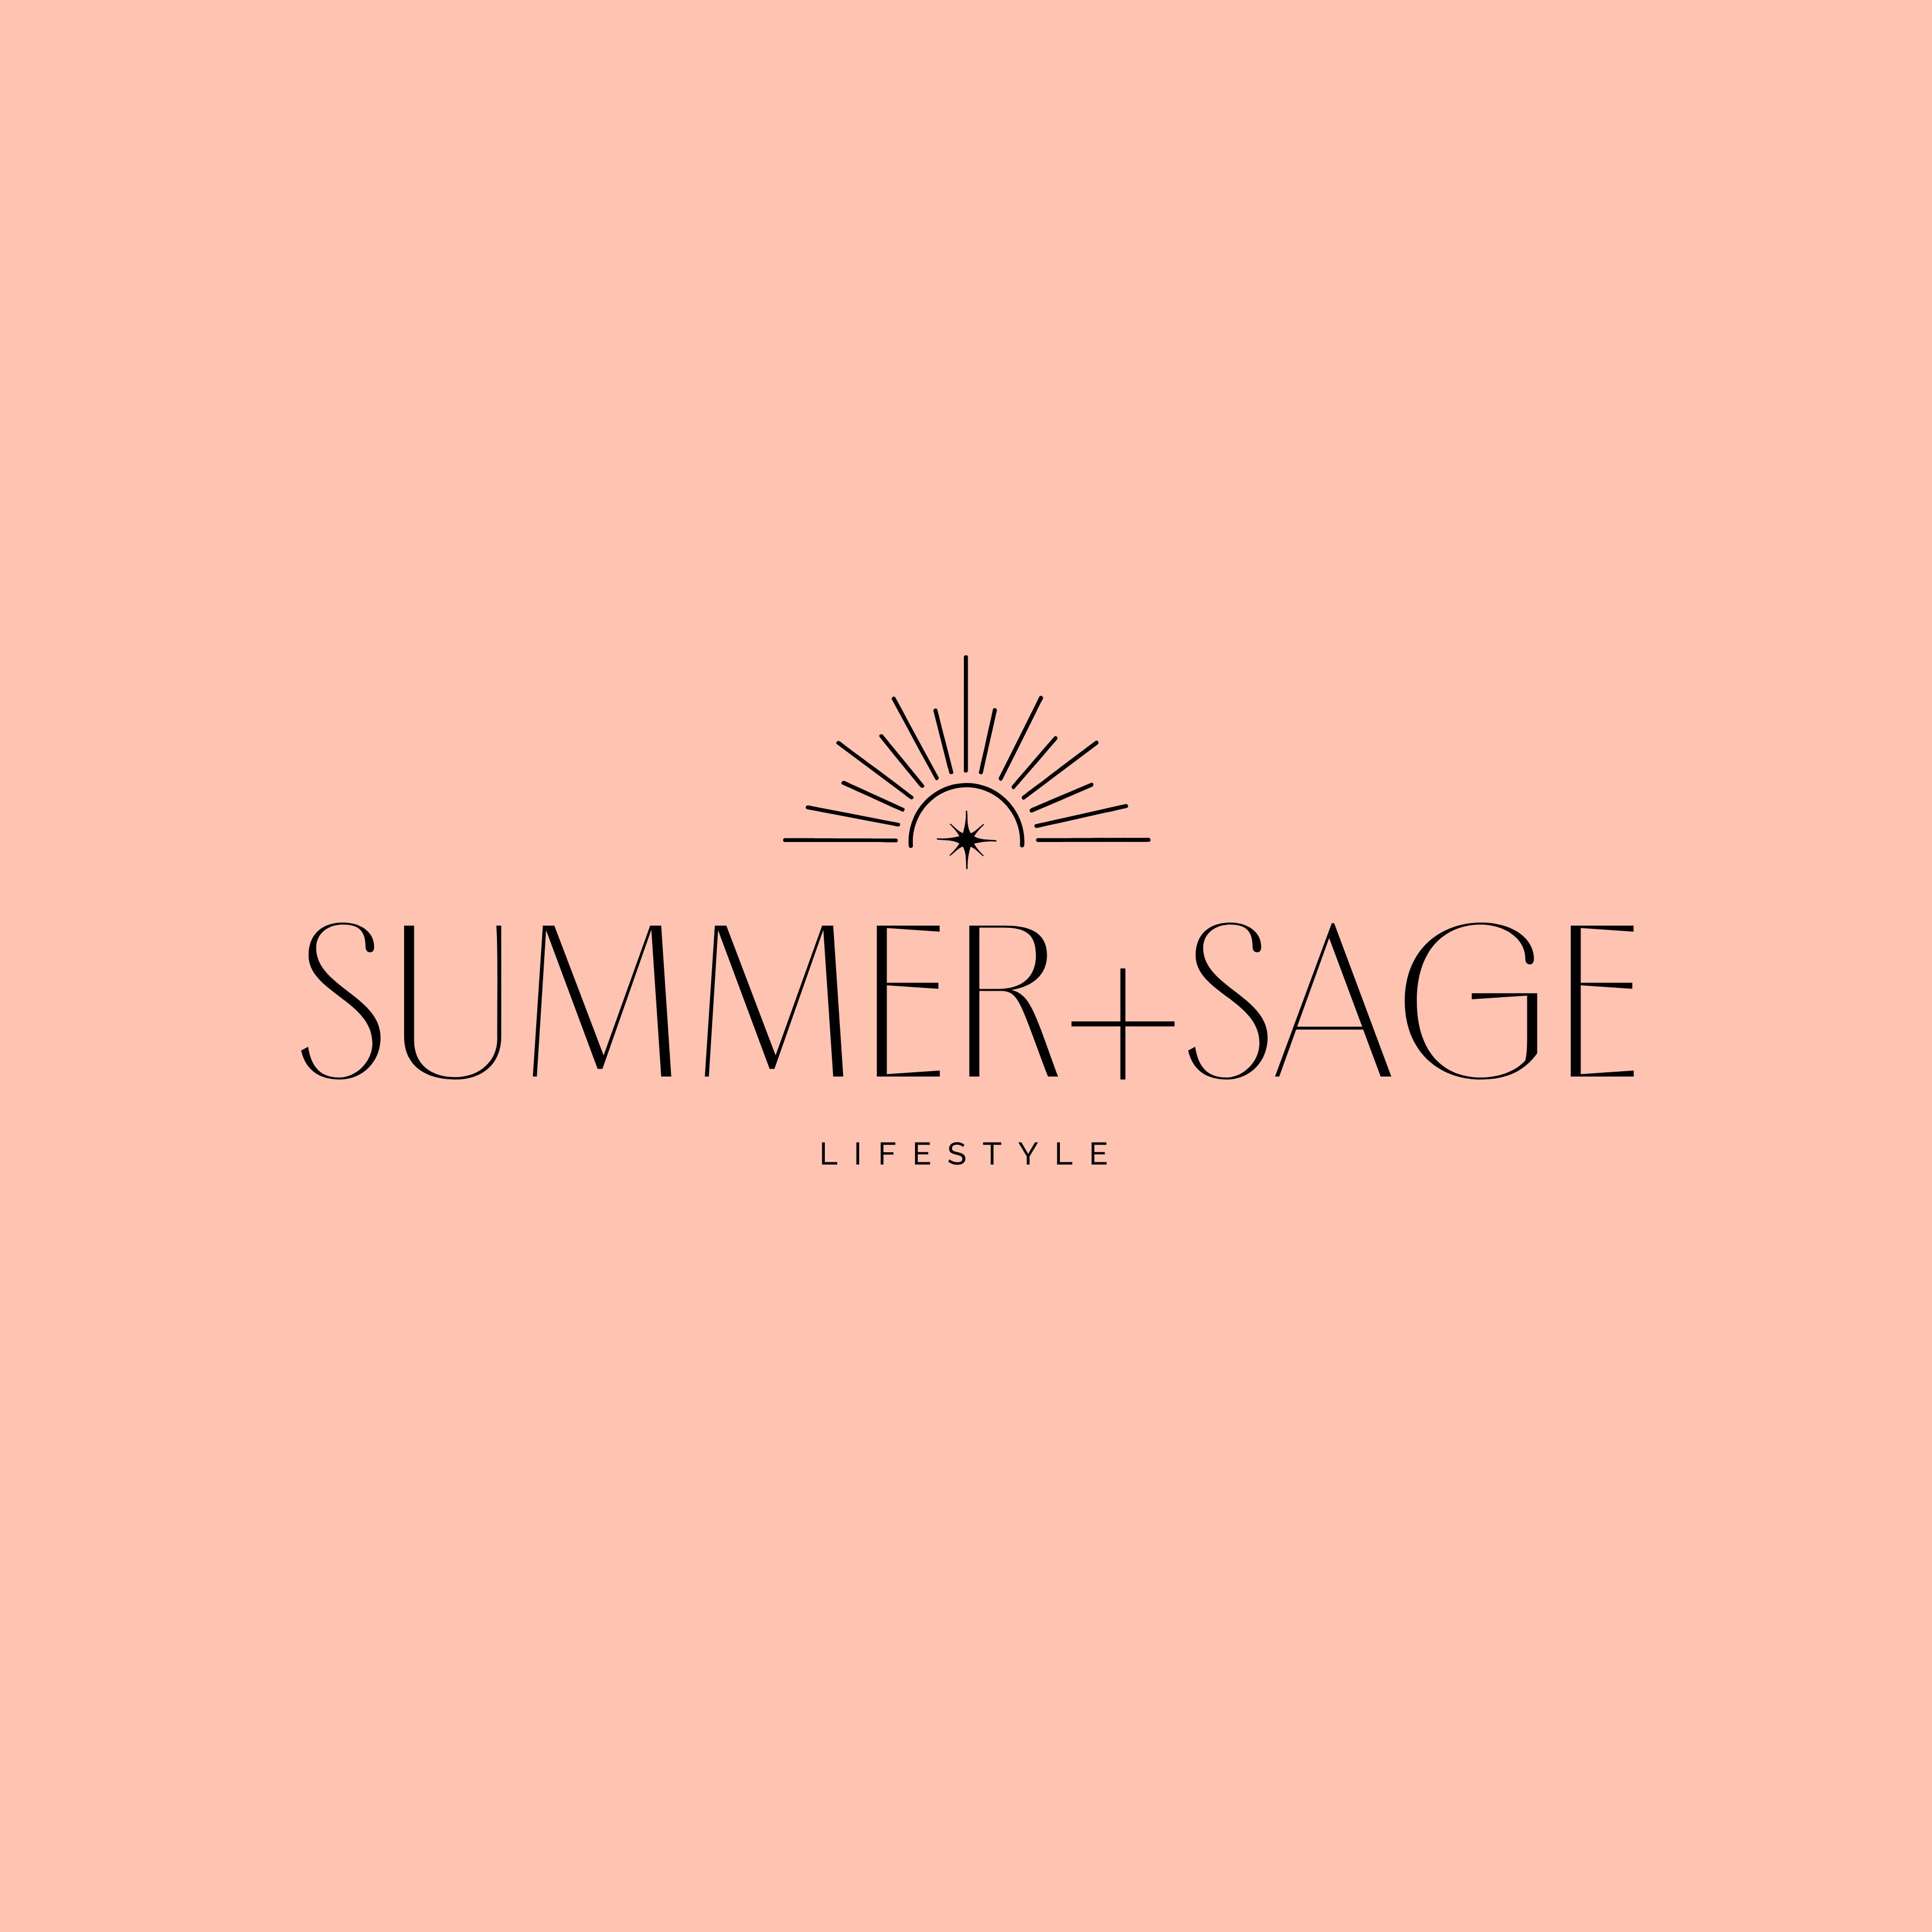 Summer+Sage Lifestyle